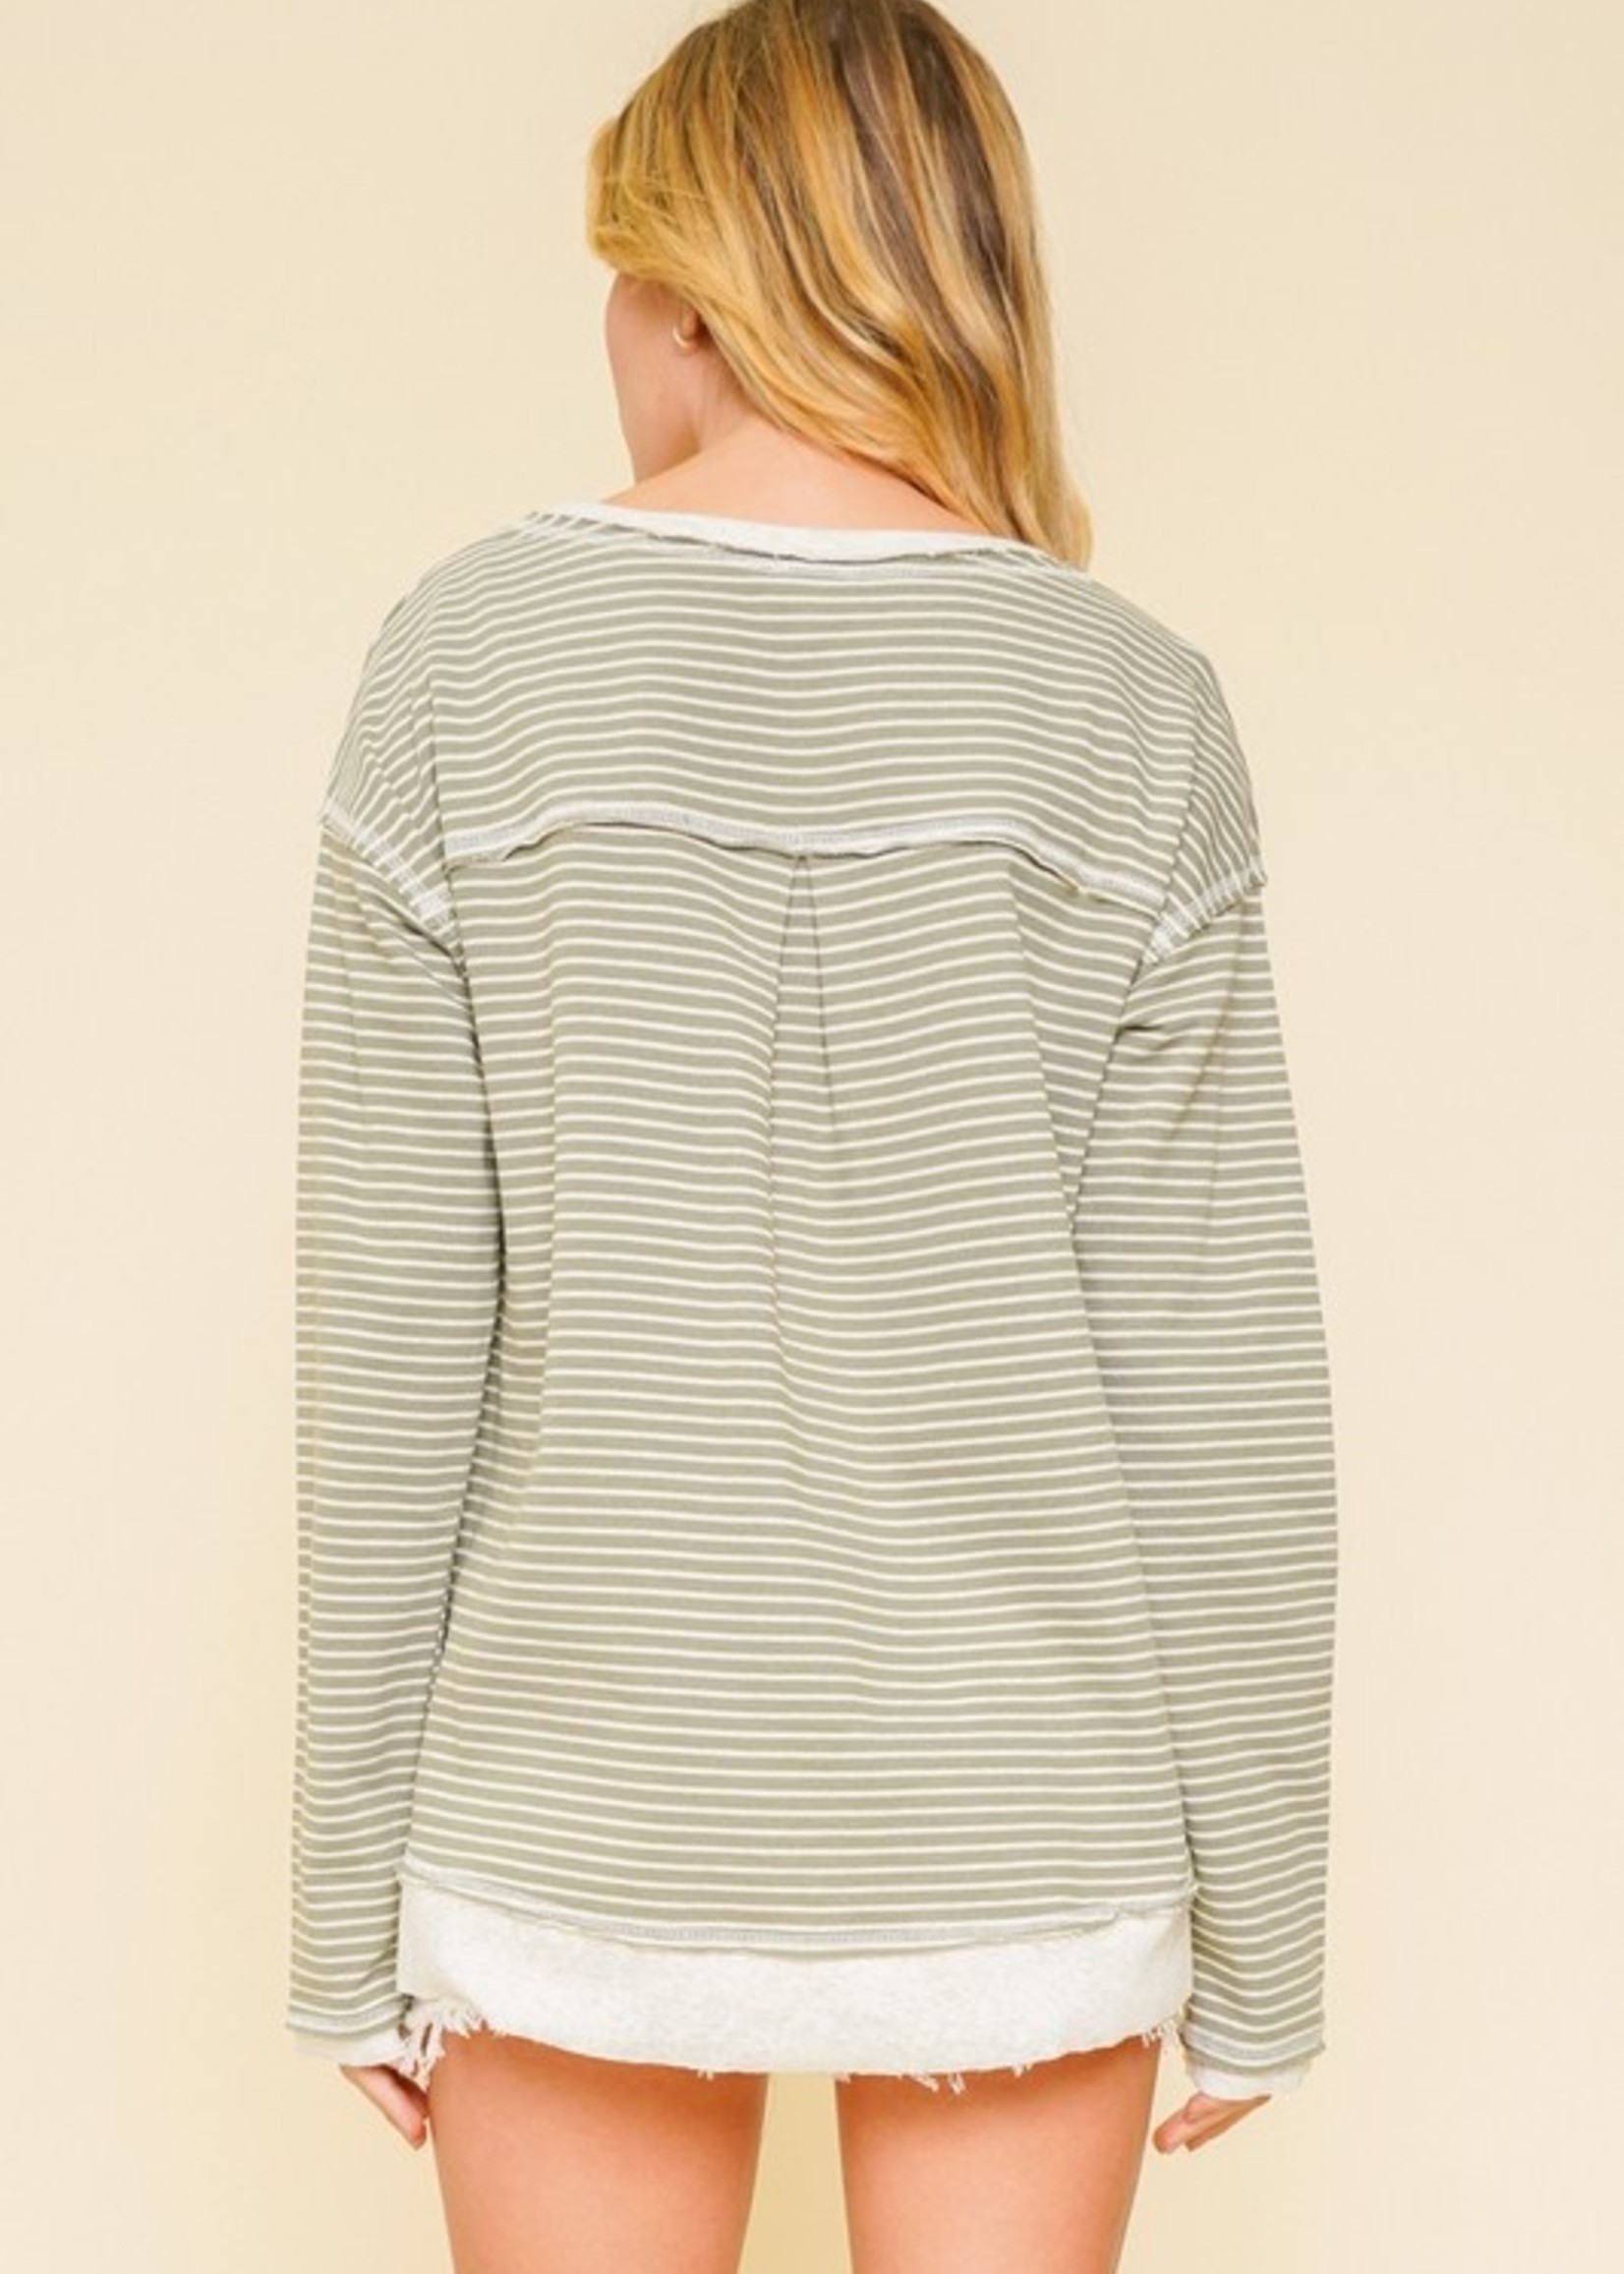 Stripe Pullover - Olive